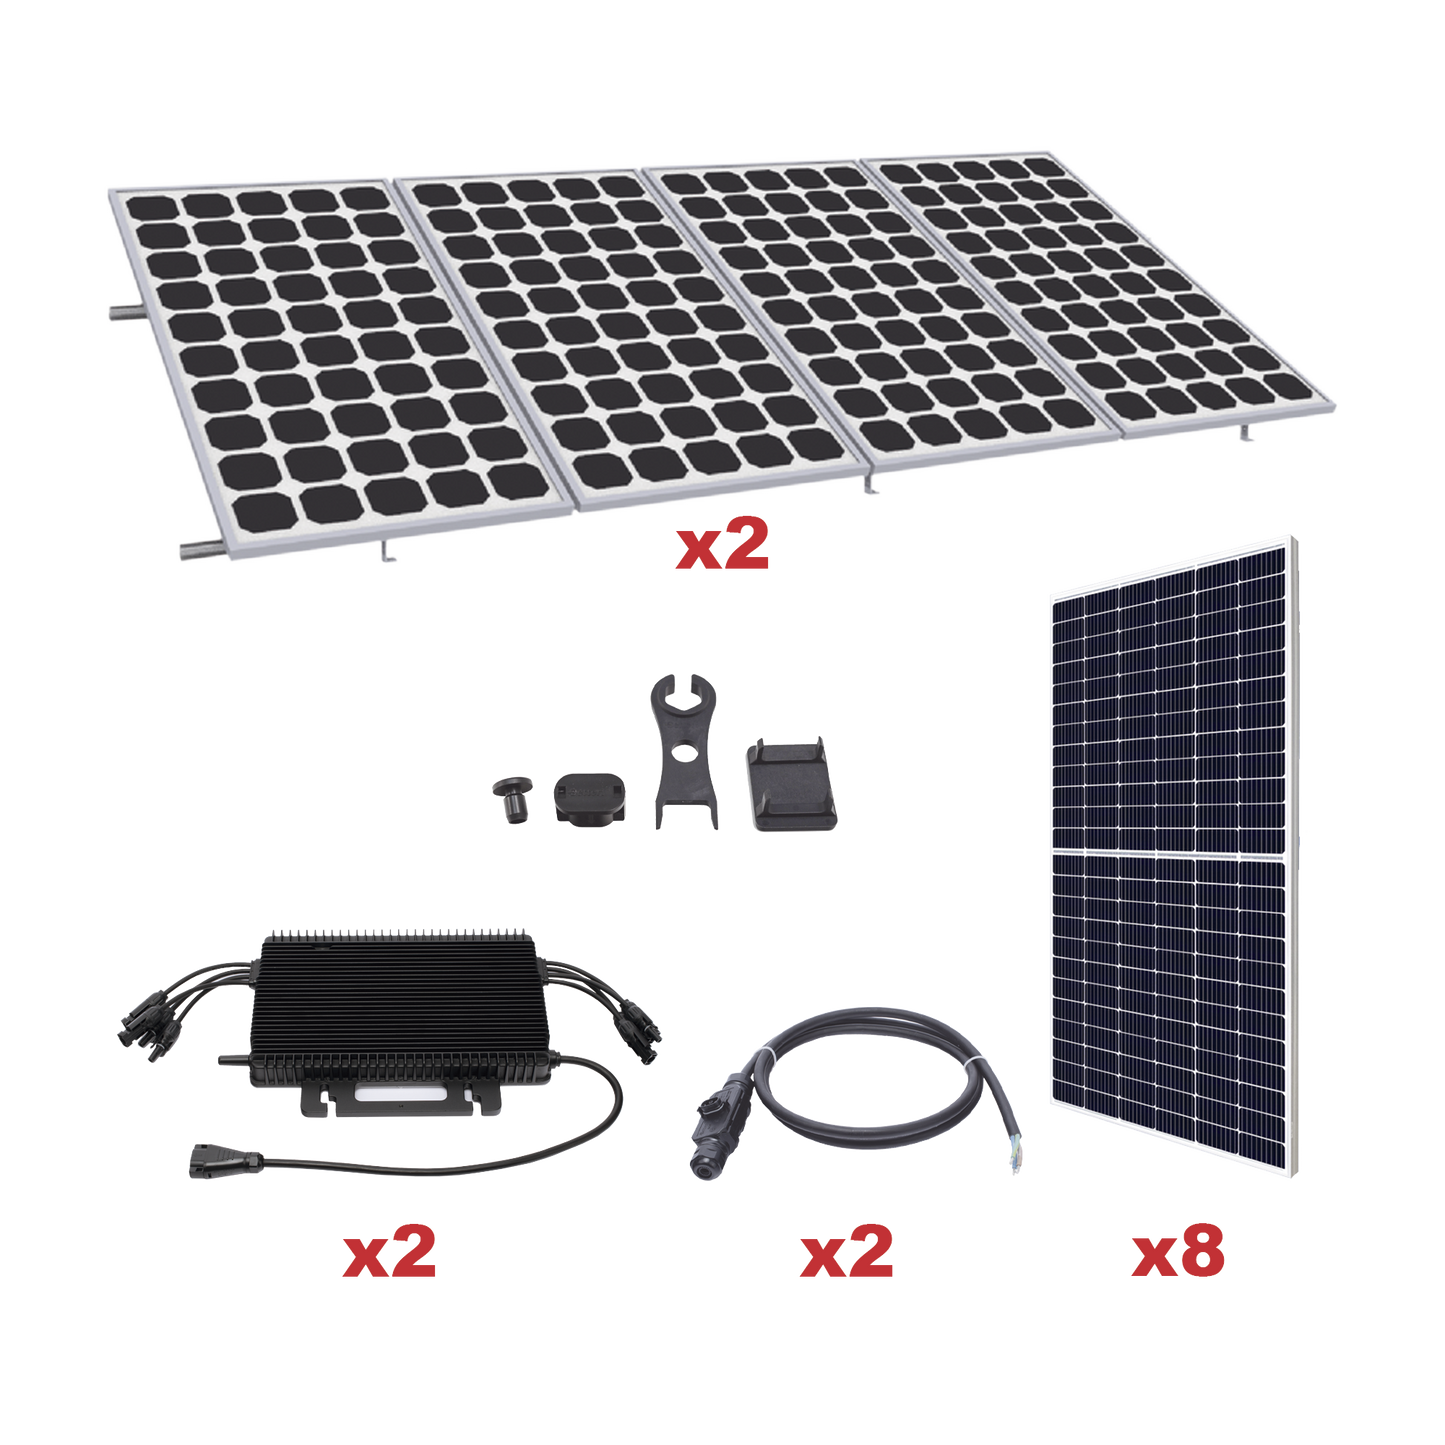 Kit Solar para Interconexión de 4.4KW de Potencia Pico 220Vcc con Microinversor y 8 Módulos de 550 W (Incluye Montaje )